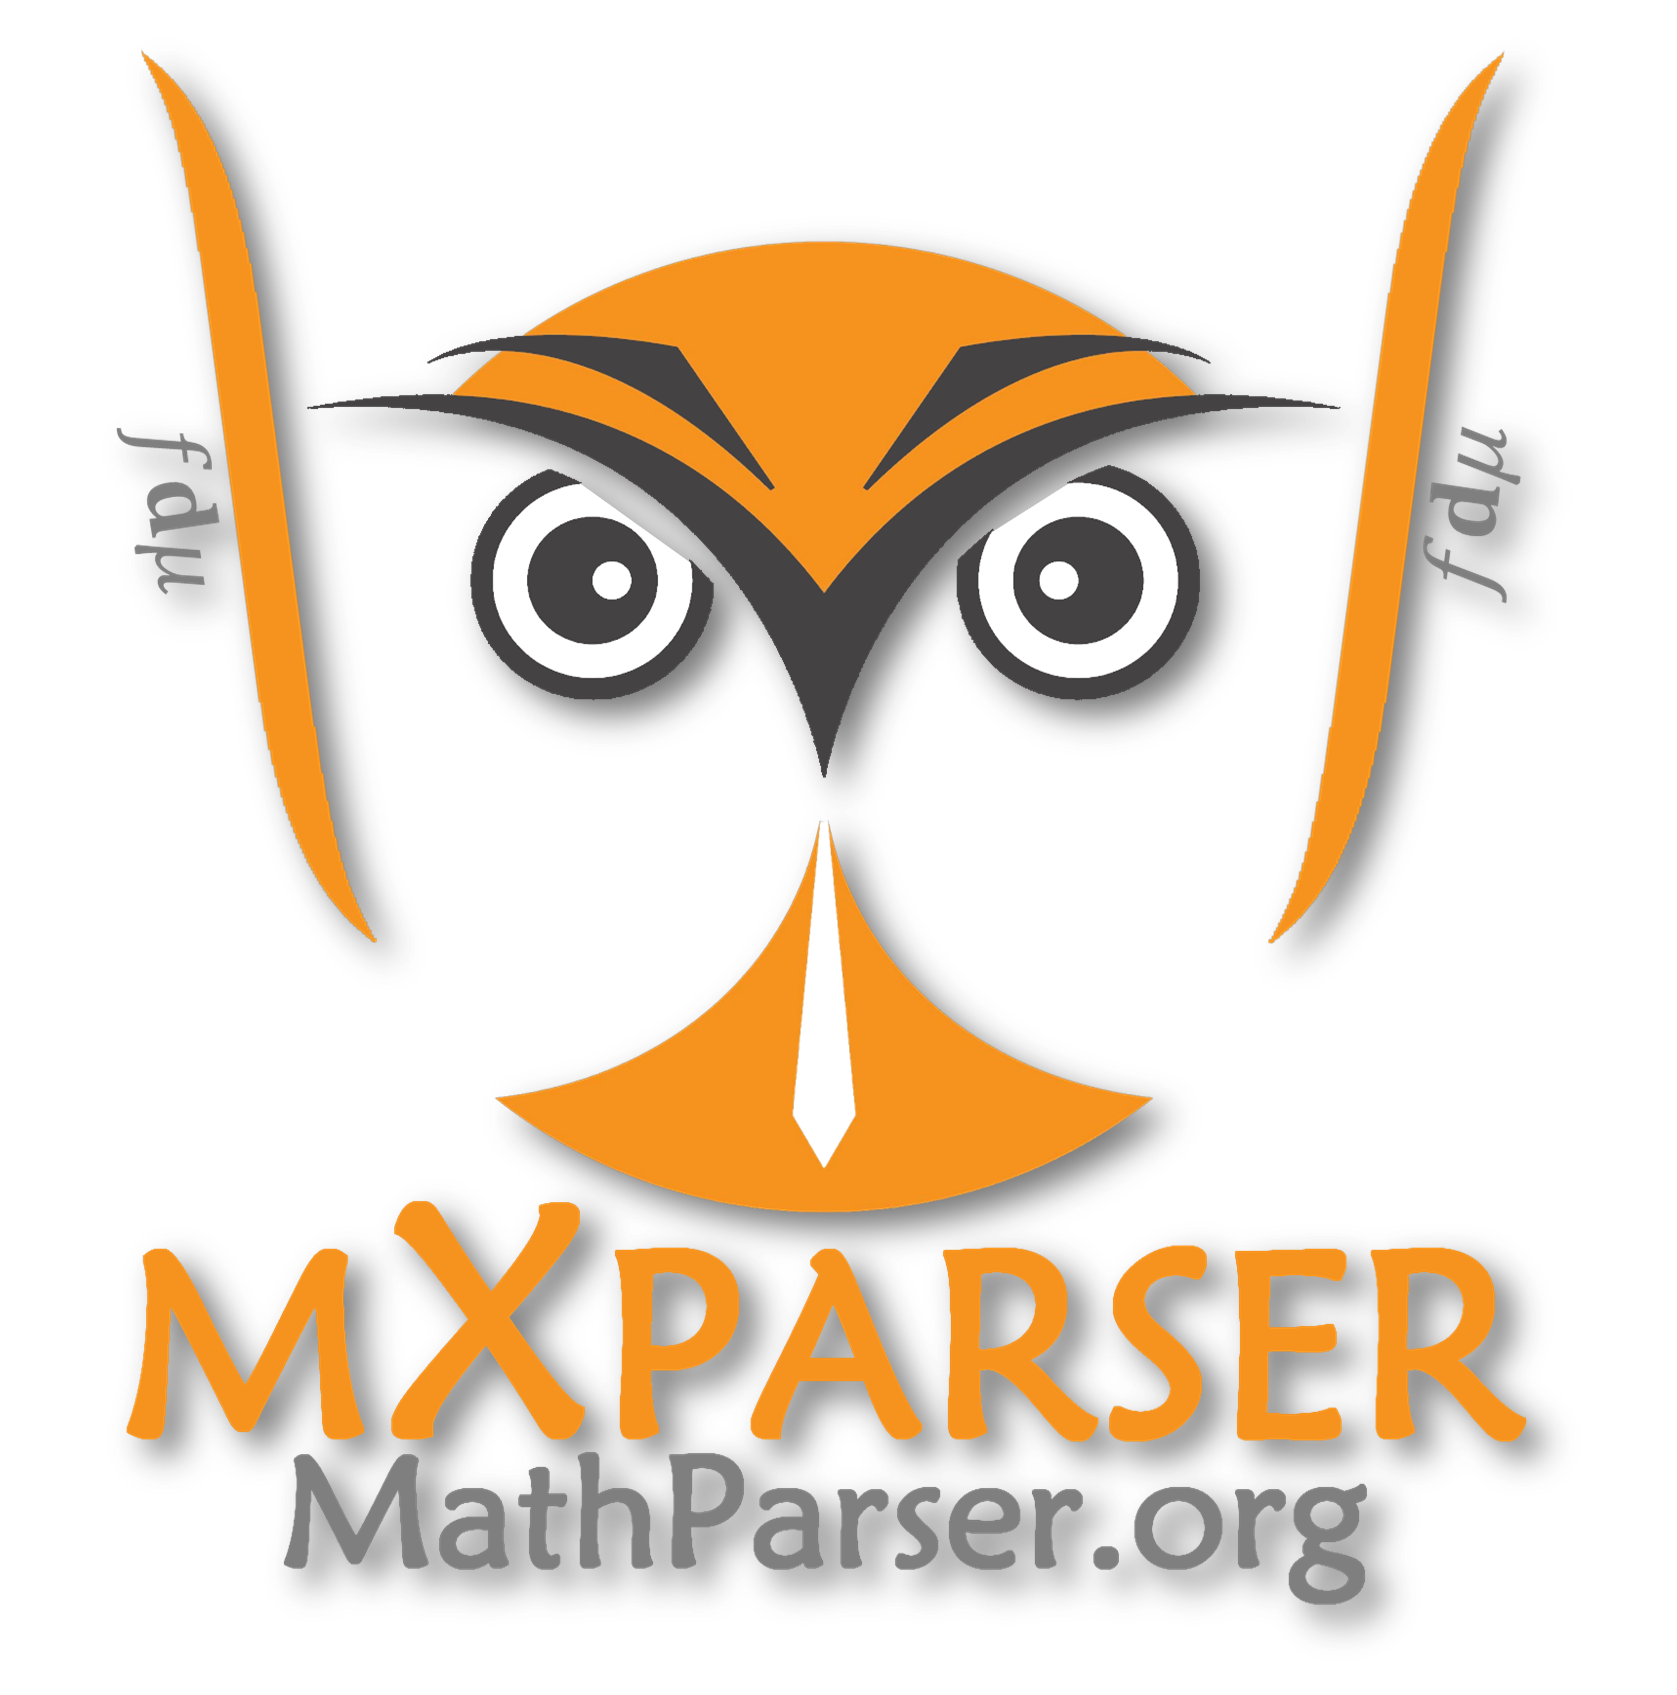 MathParser.org-mXparser